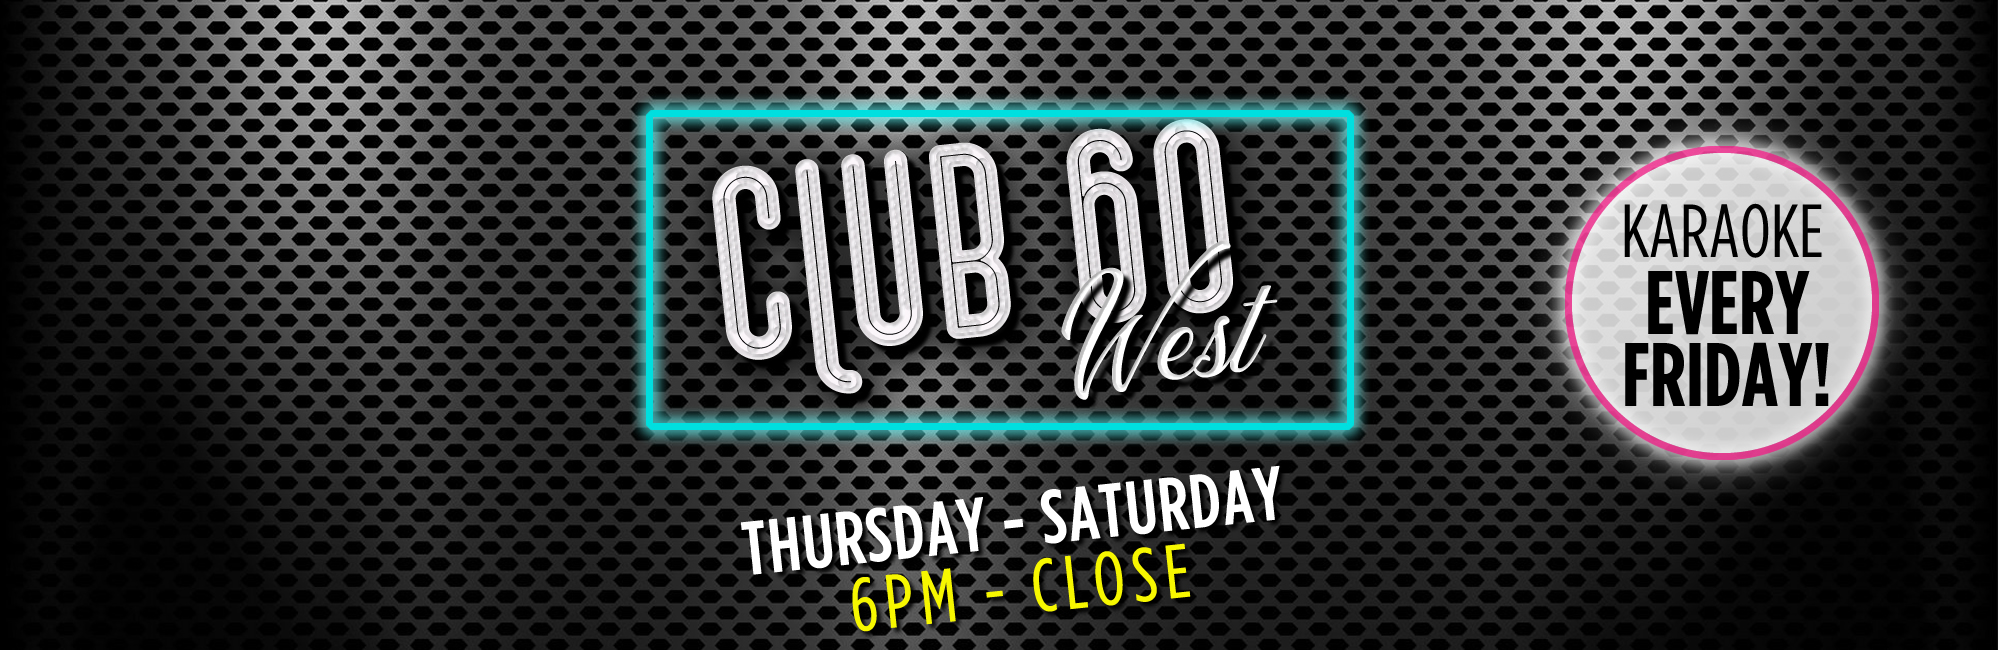 Club 60 West